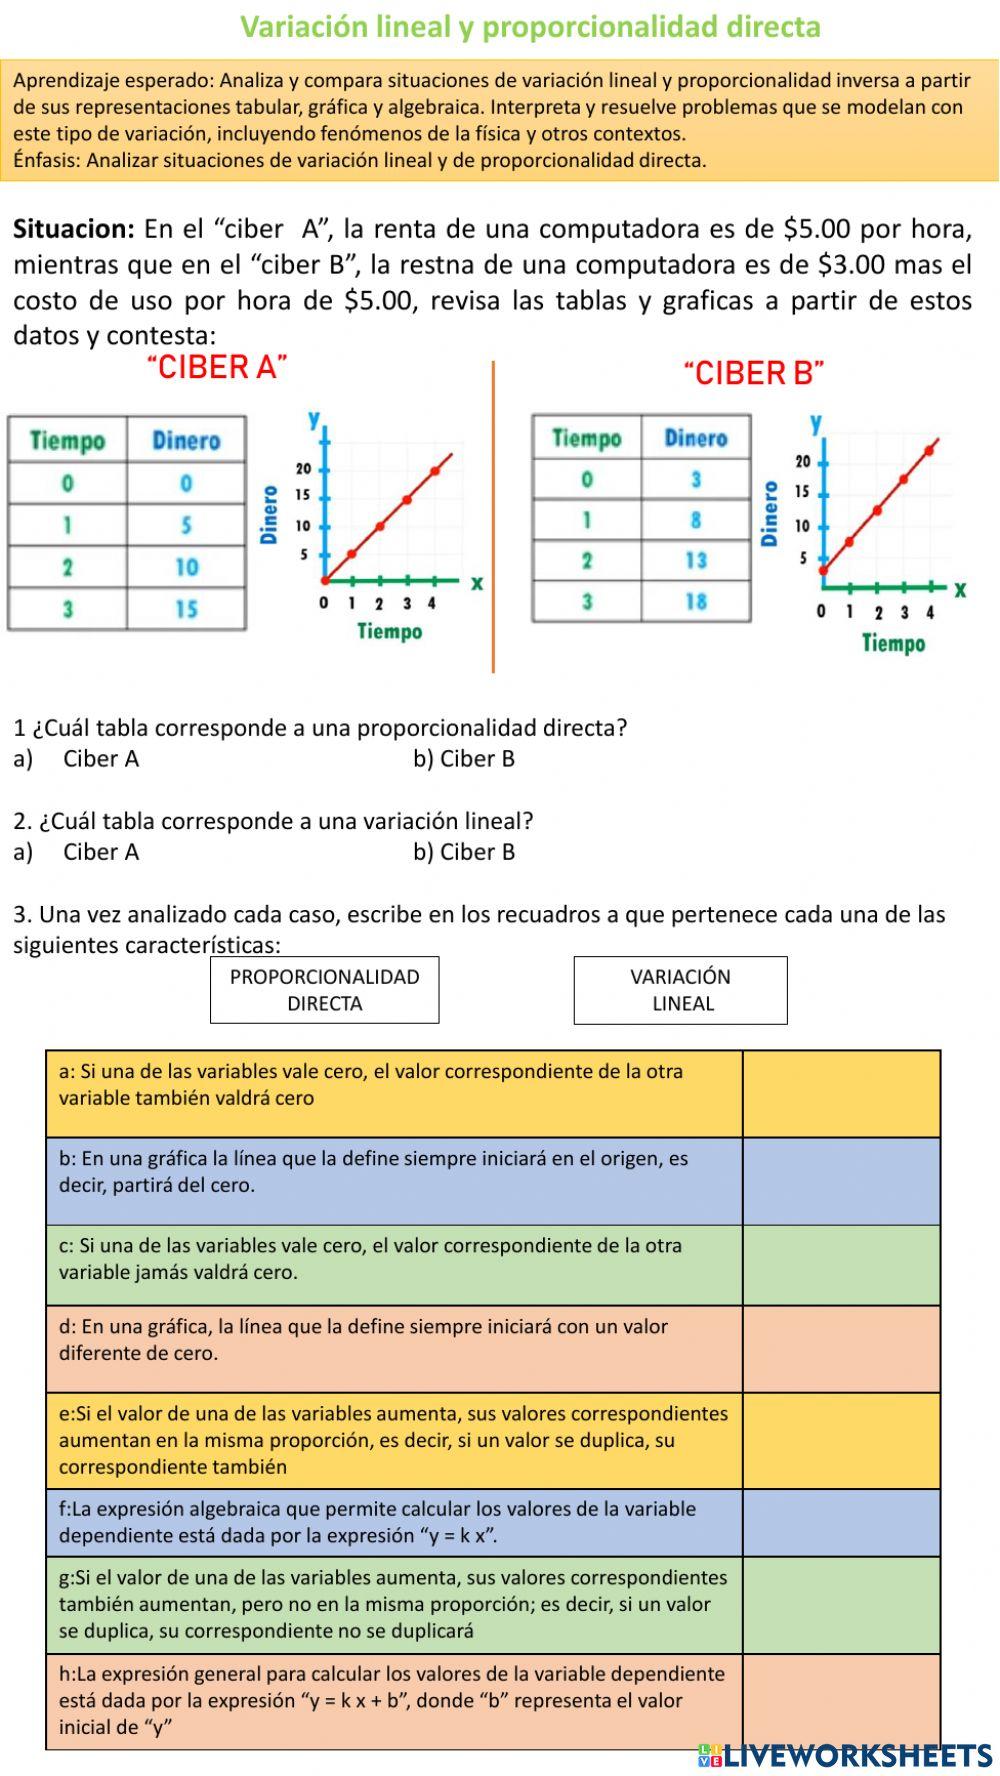 Diferencias entre la proporcionalidad directa y la variación lineal